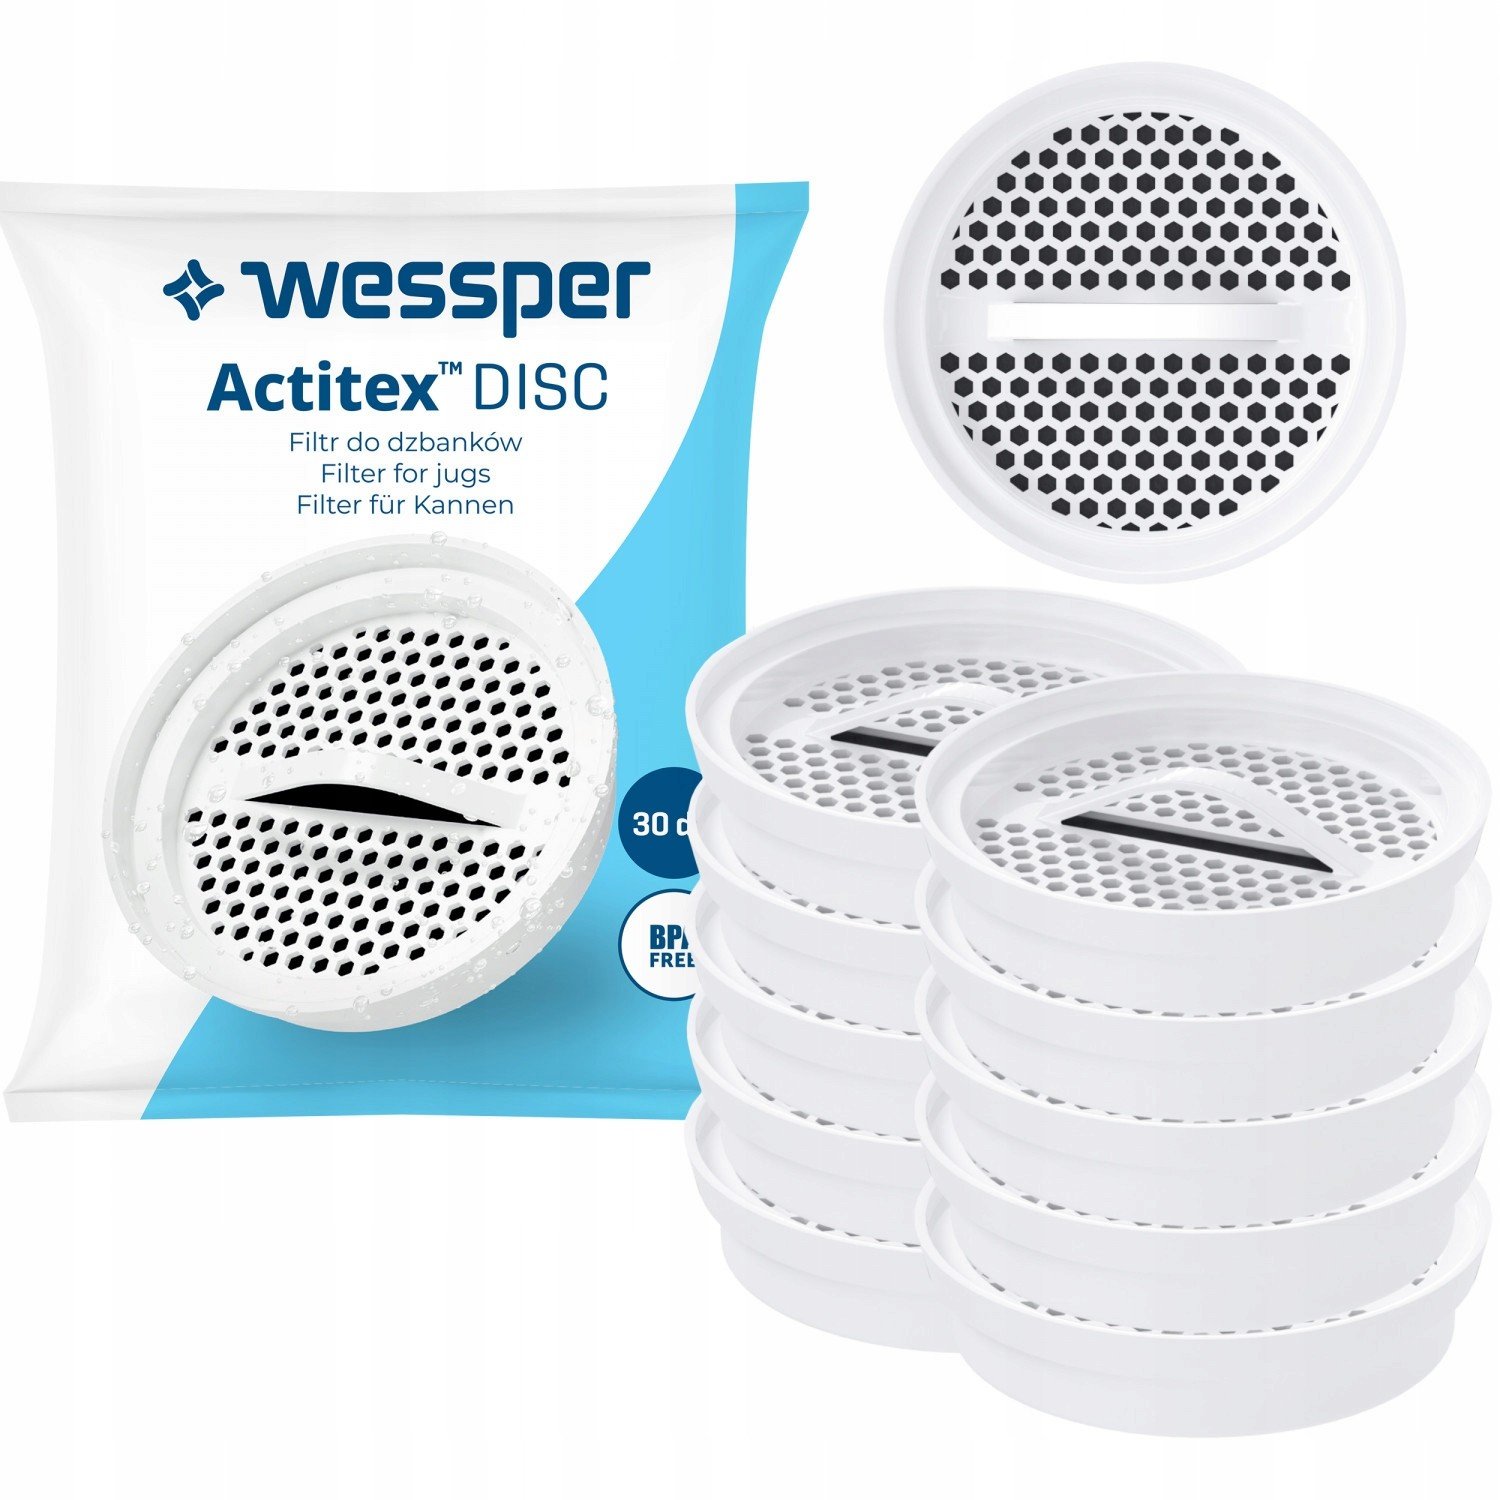 10x Filtrační Filtr Dzbanka Wessper Actitex Disc